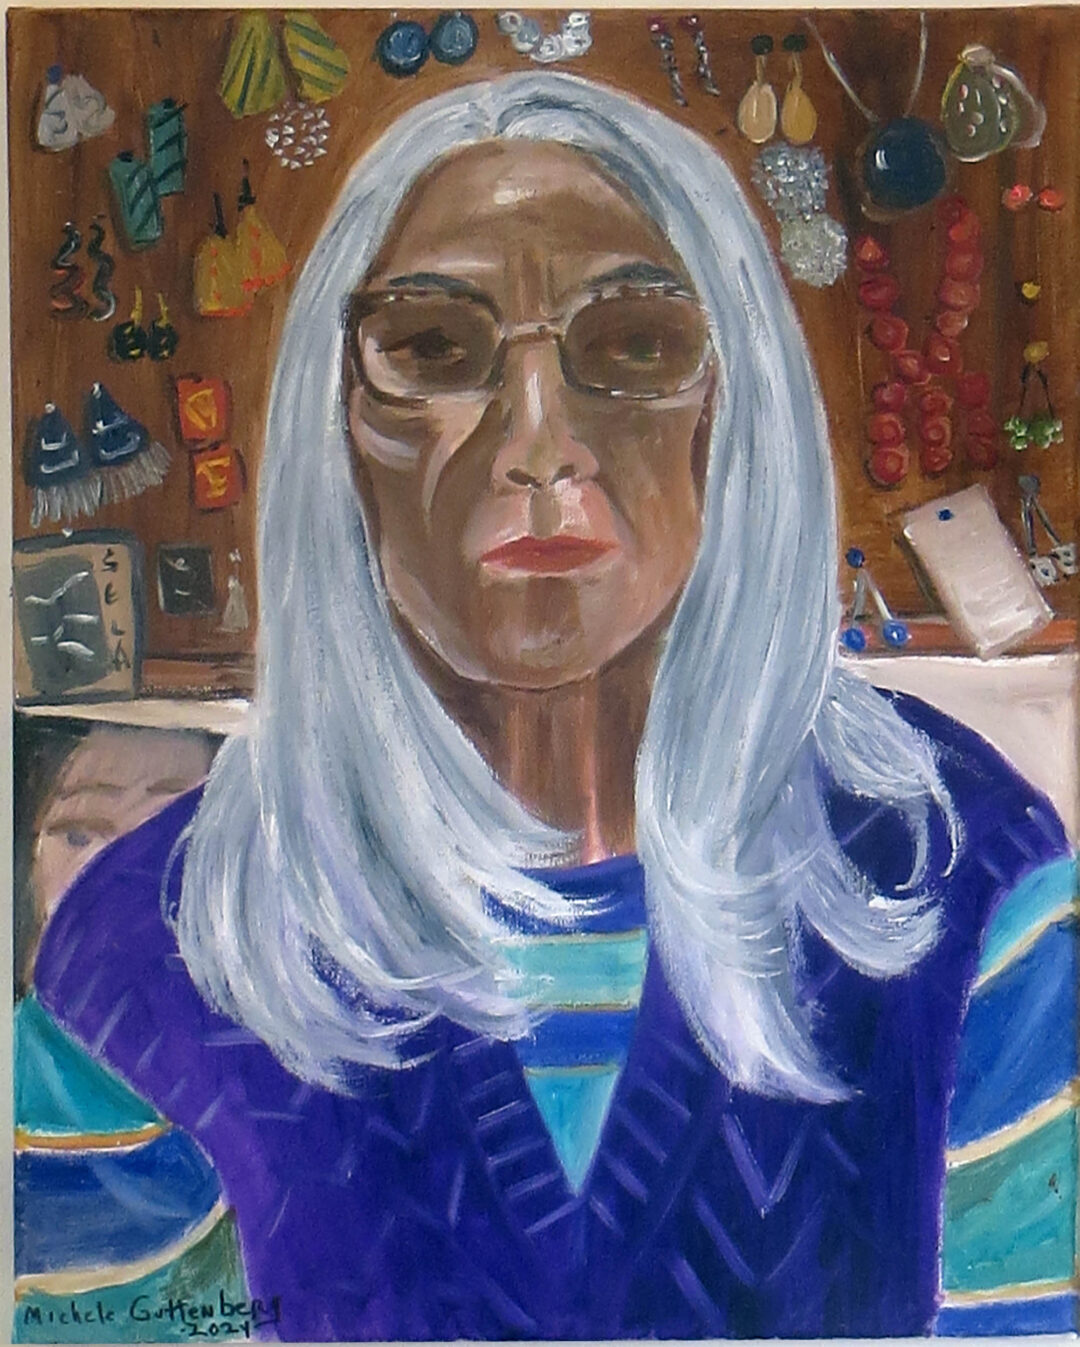 Michele Guttenberg “Self Portrait” oil on canvas, 16” W x 20” H, 2024 $150.00